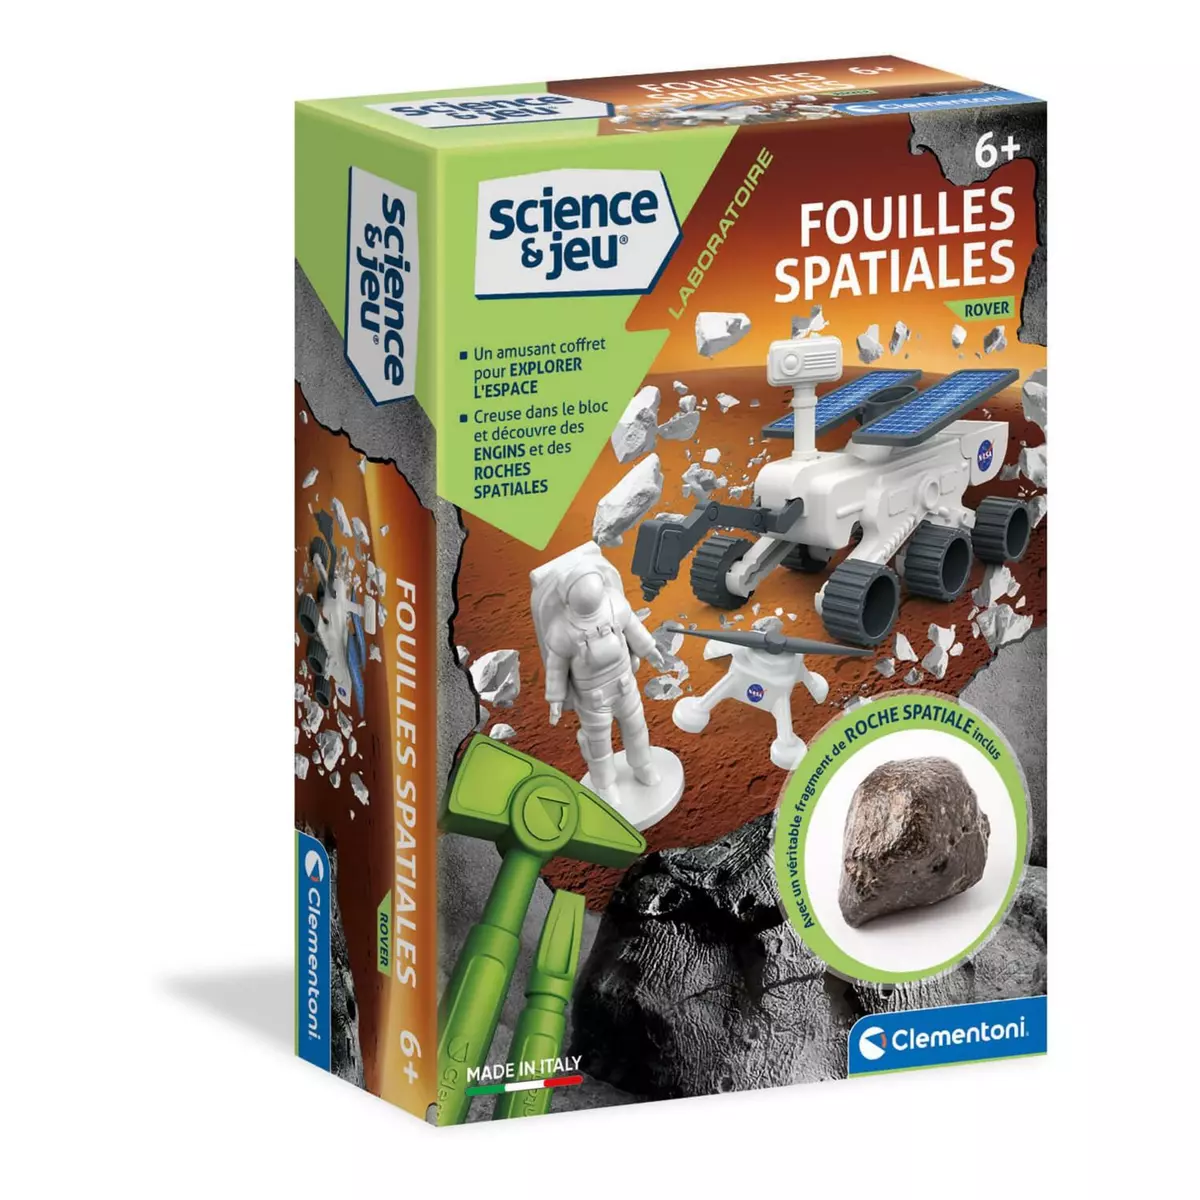 CLEMENTONI Kit science et jeu : Fouilles spatiales - Rover